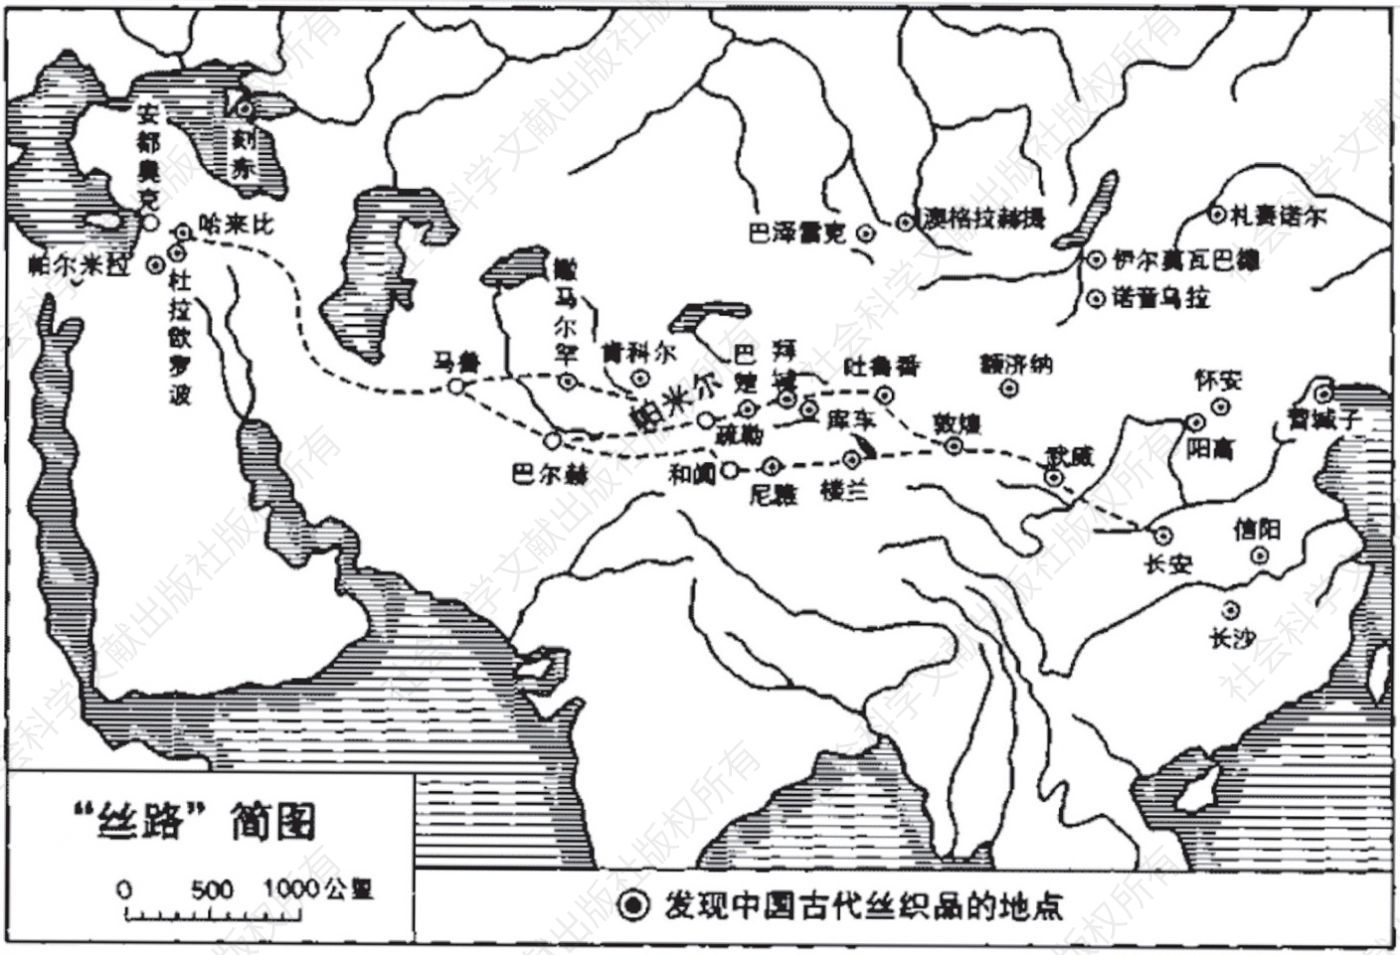 中国古代丝织品发现地点与丝绸之路，转引自《夏鼐文集》（中册），第307页。